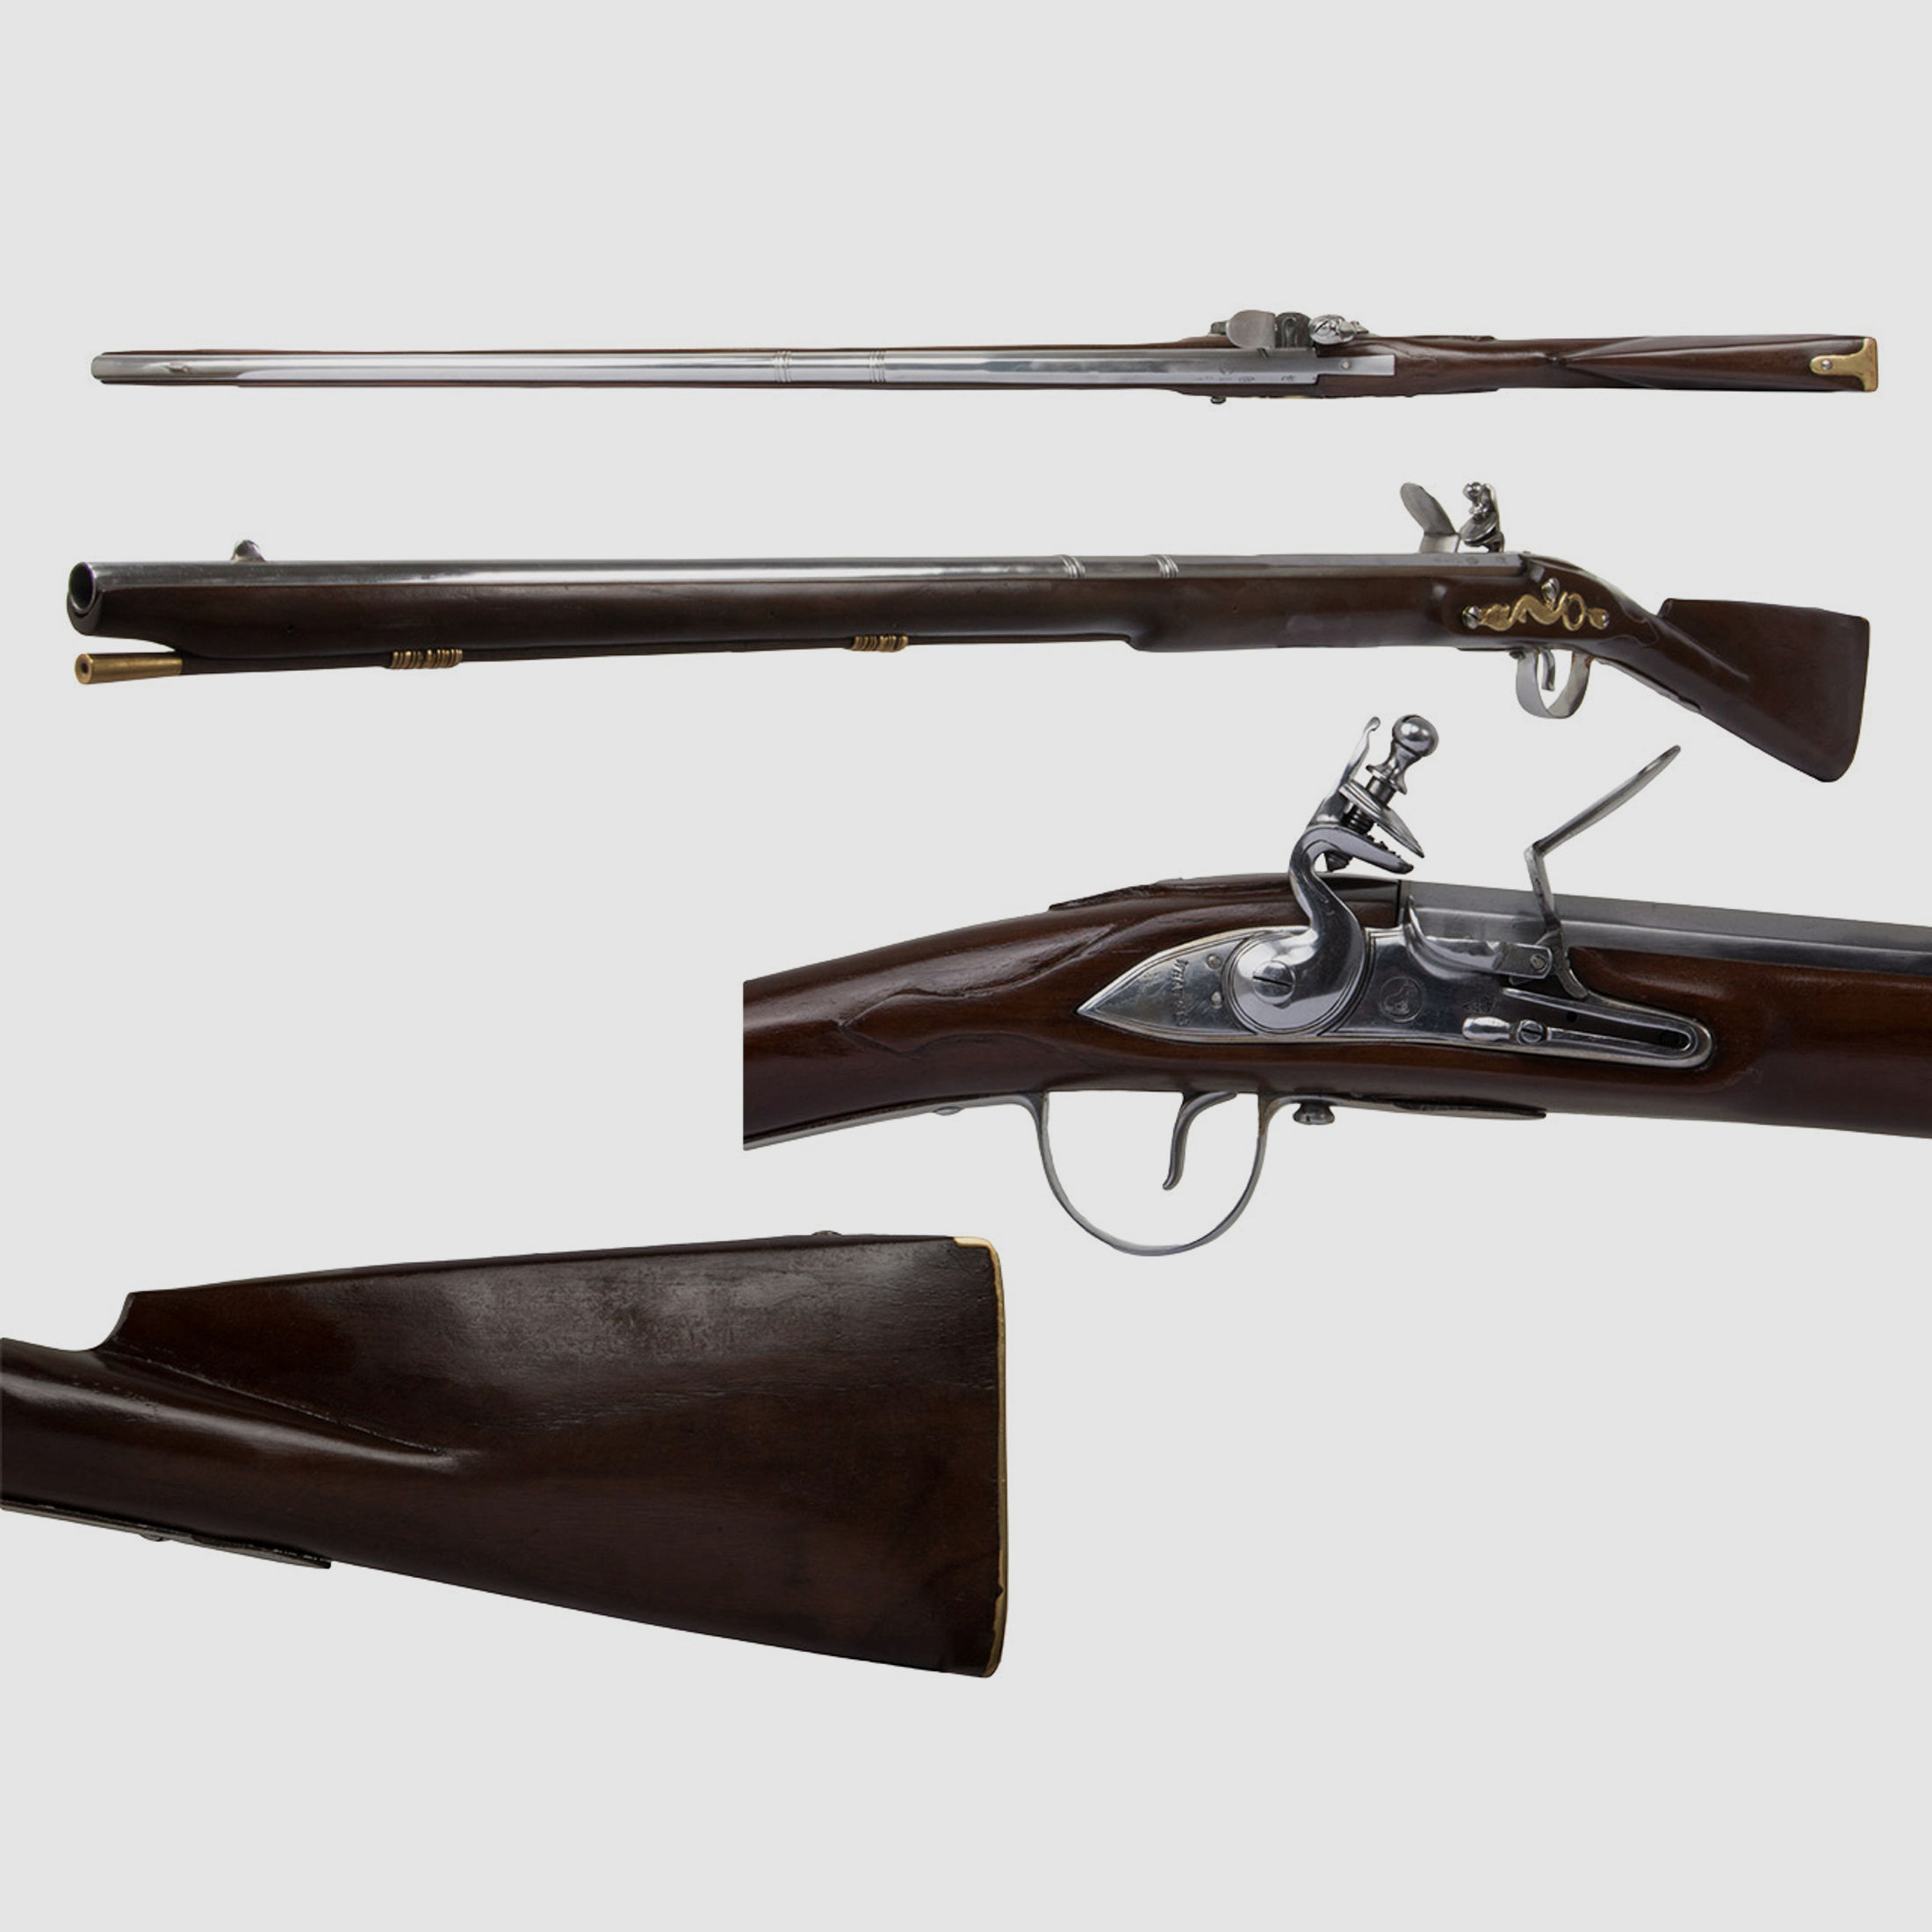 Vorderlader Steinschlossgewehr Trade Muskete 1816 36 Zoll Kaliber .63 bzw. 16 mm (P18)